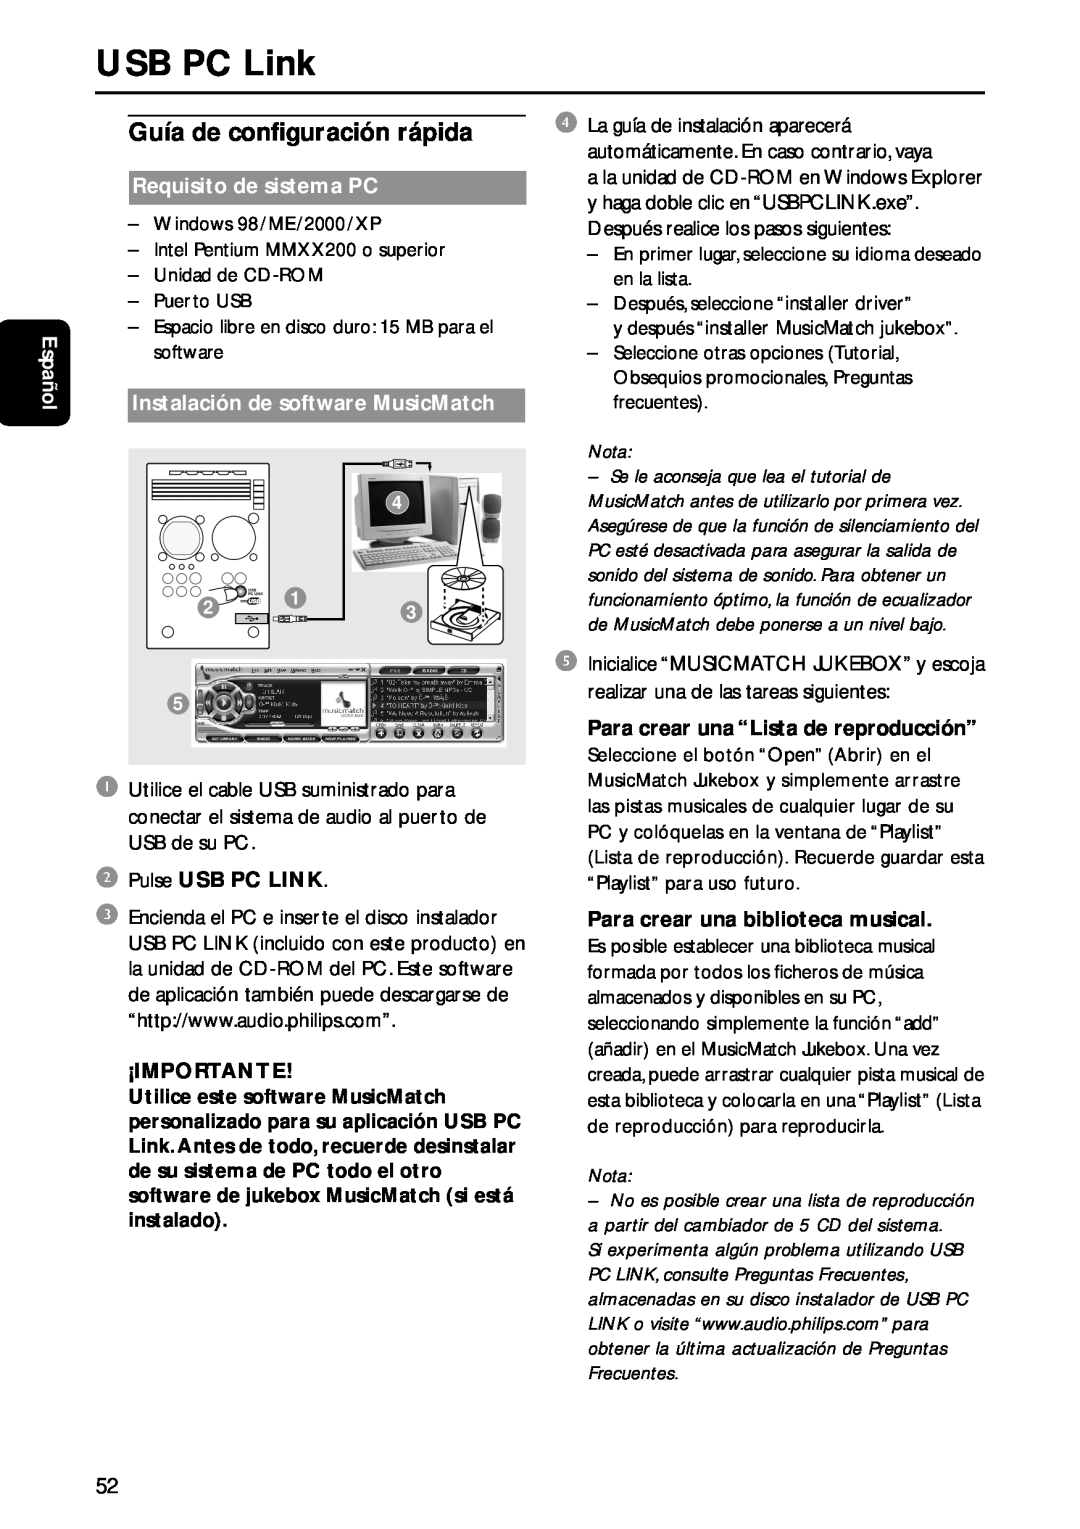 Philips MC-M570 USB PC Link, Español, Requisito de sistema PC, Instalación de software MusicMatch, 2Pulse USB PC LINK 